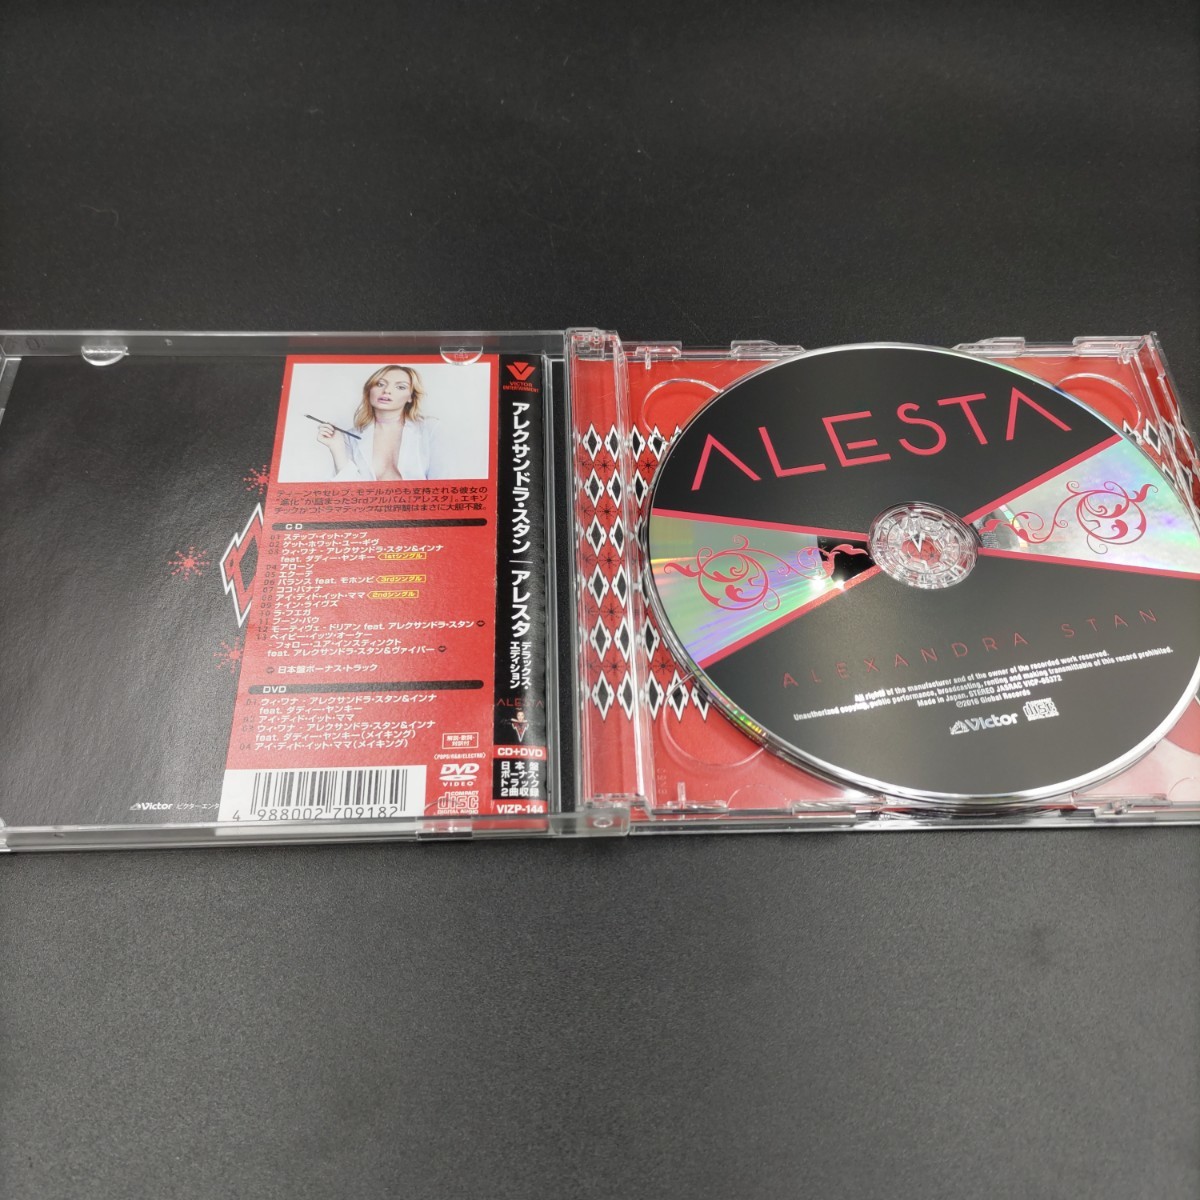 【中古】 CD+DVD デラックスエディション アレクサンドラ スタン アレスタ